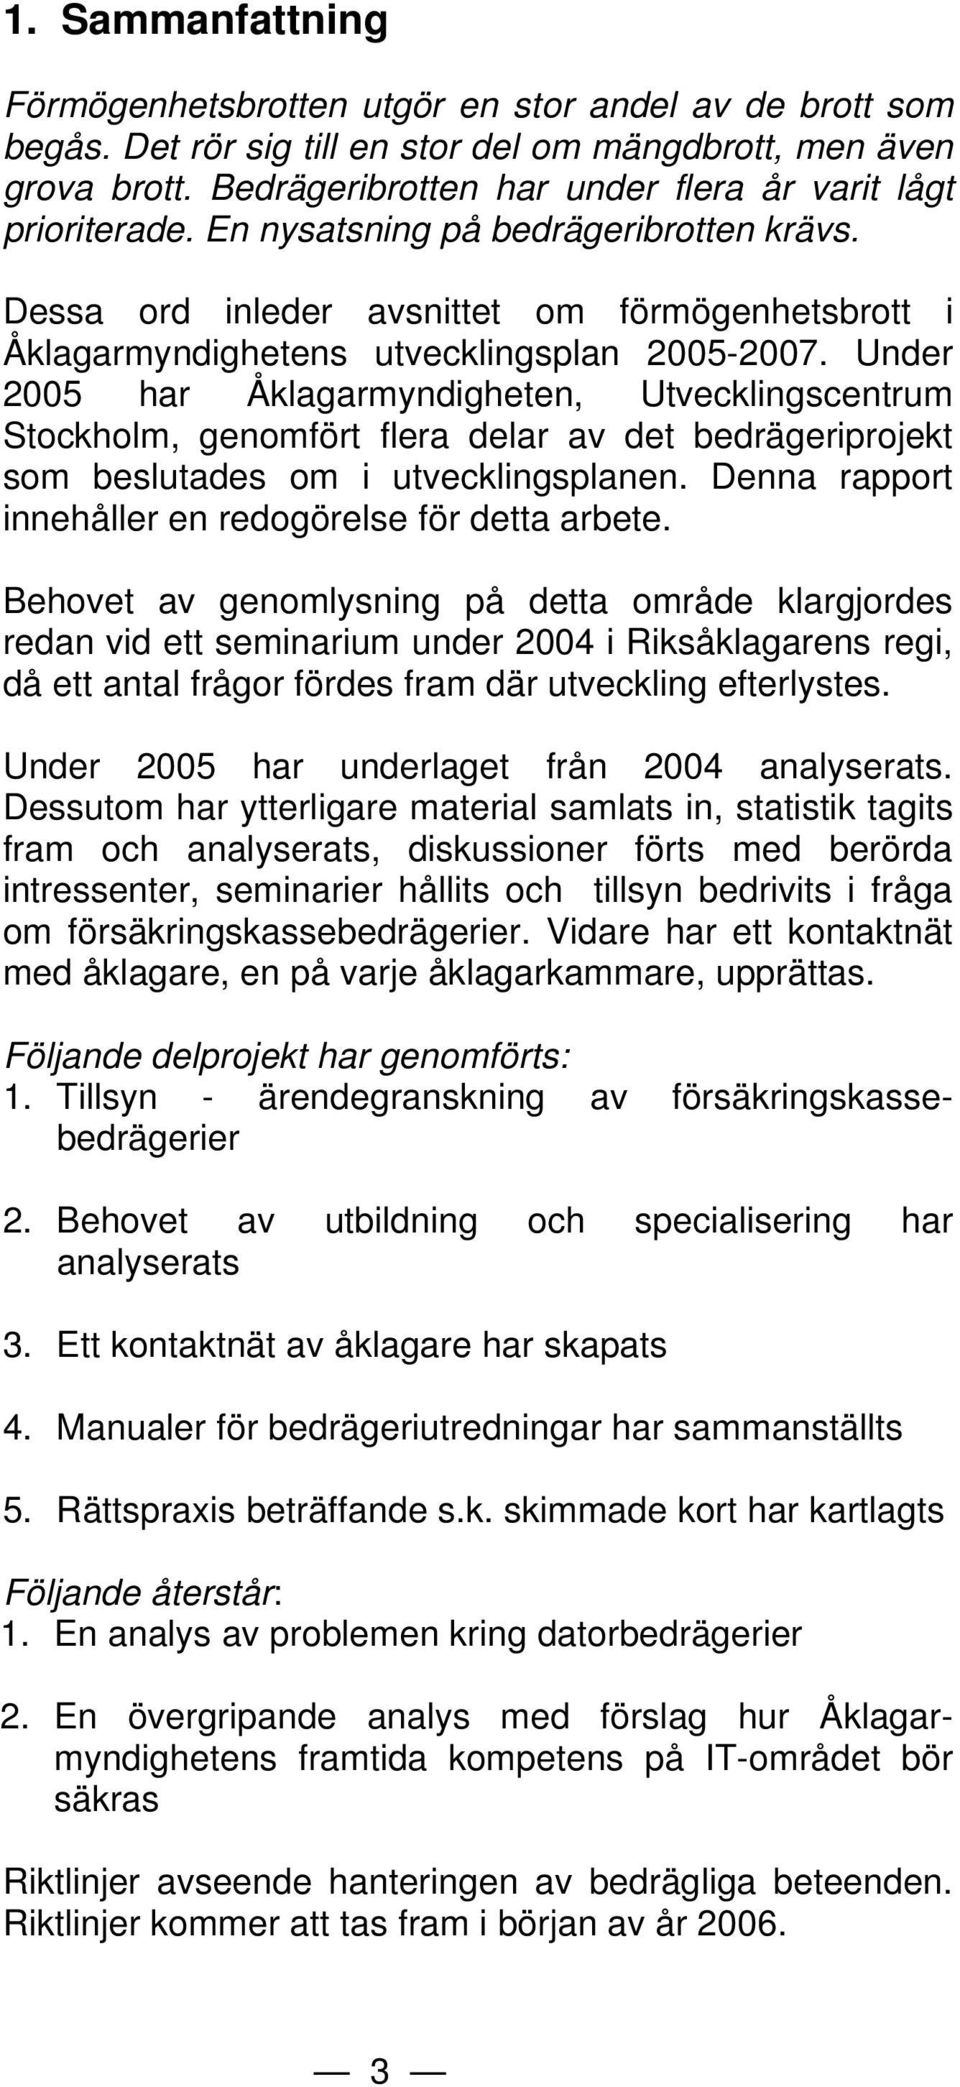 Under 2005 har Åklagarmyndigheten, Utvecklingscentrum Stockholm, genomfört flera delar av det bedrägeriprojekt som beslutades om i utvecklingsplanen.